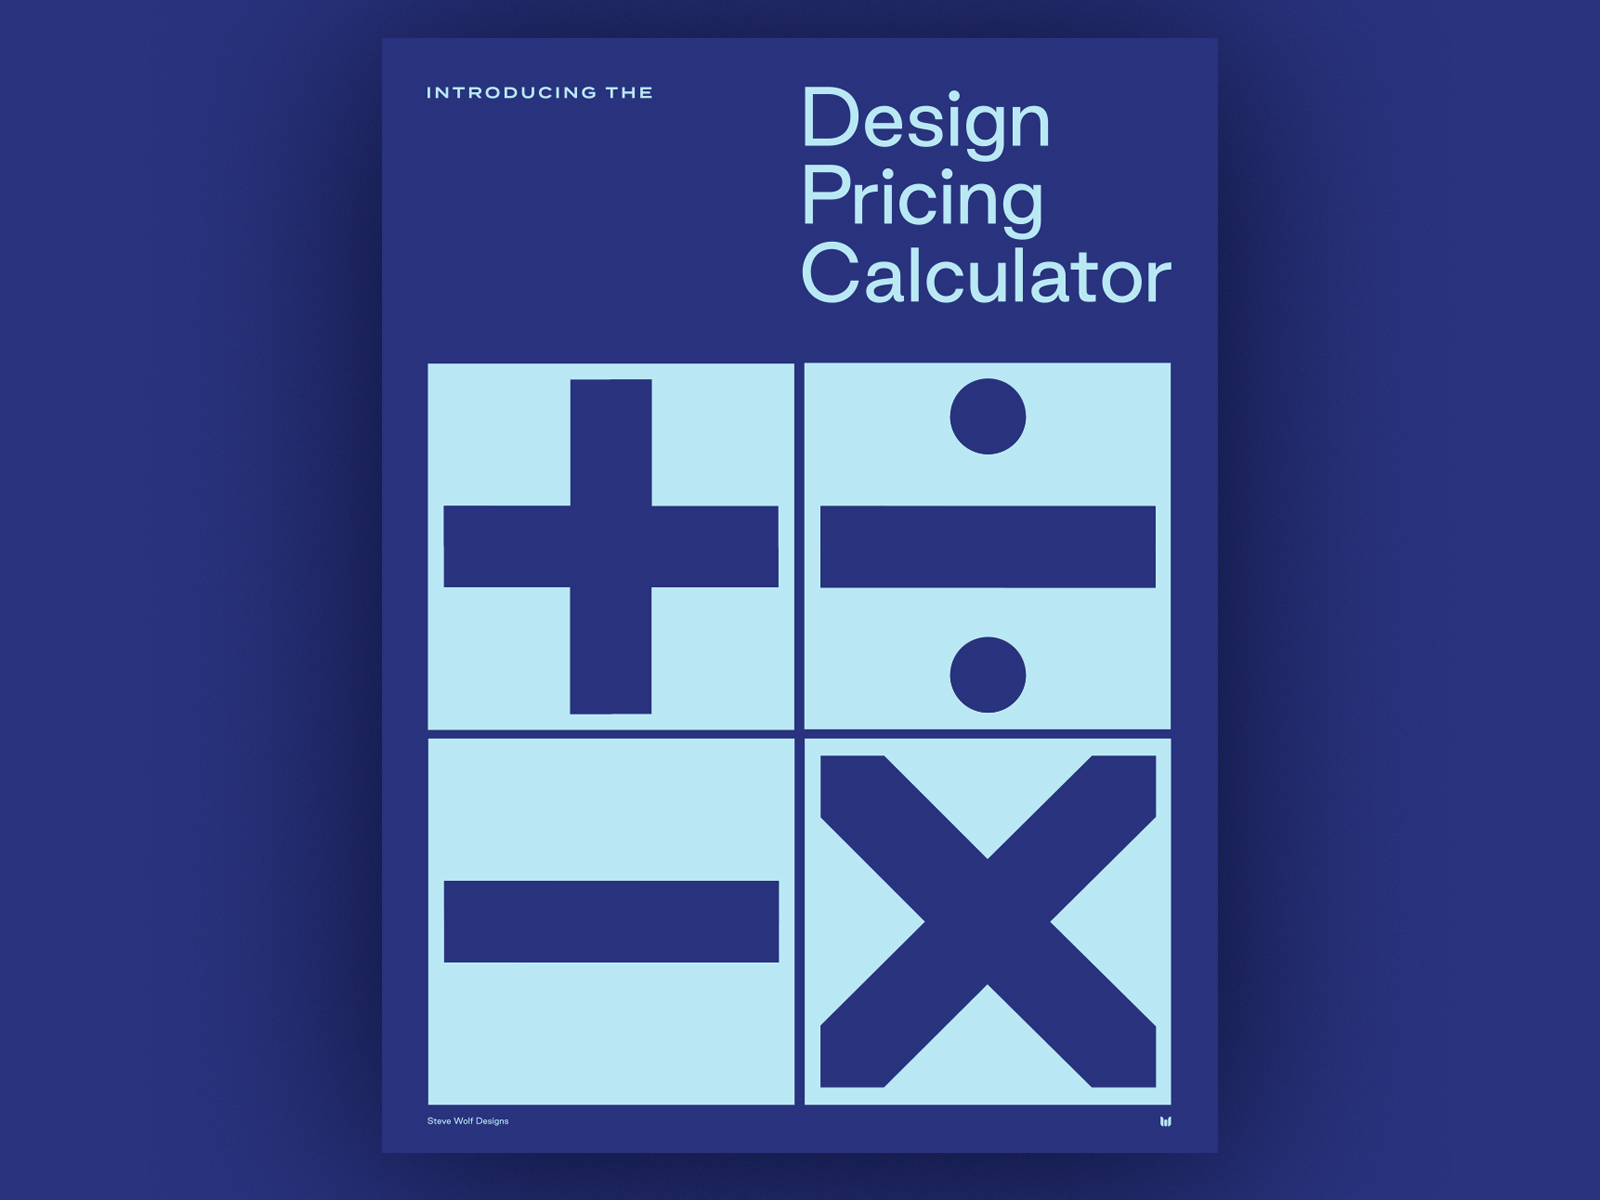 Design Pricing Calculator